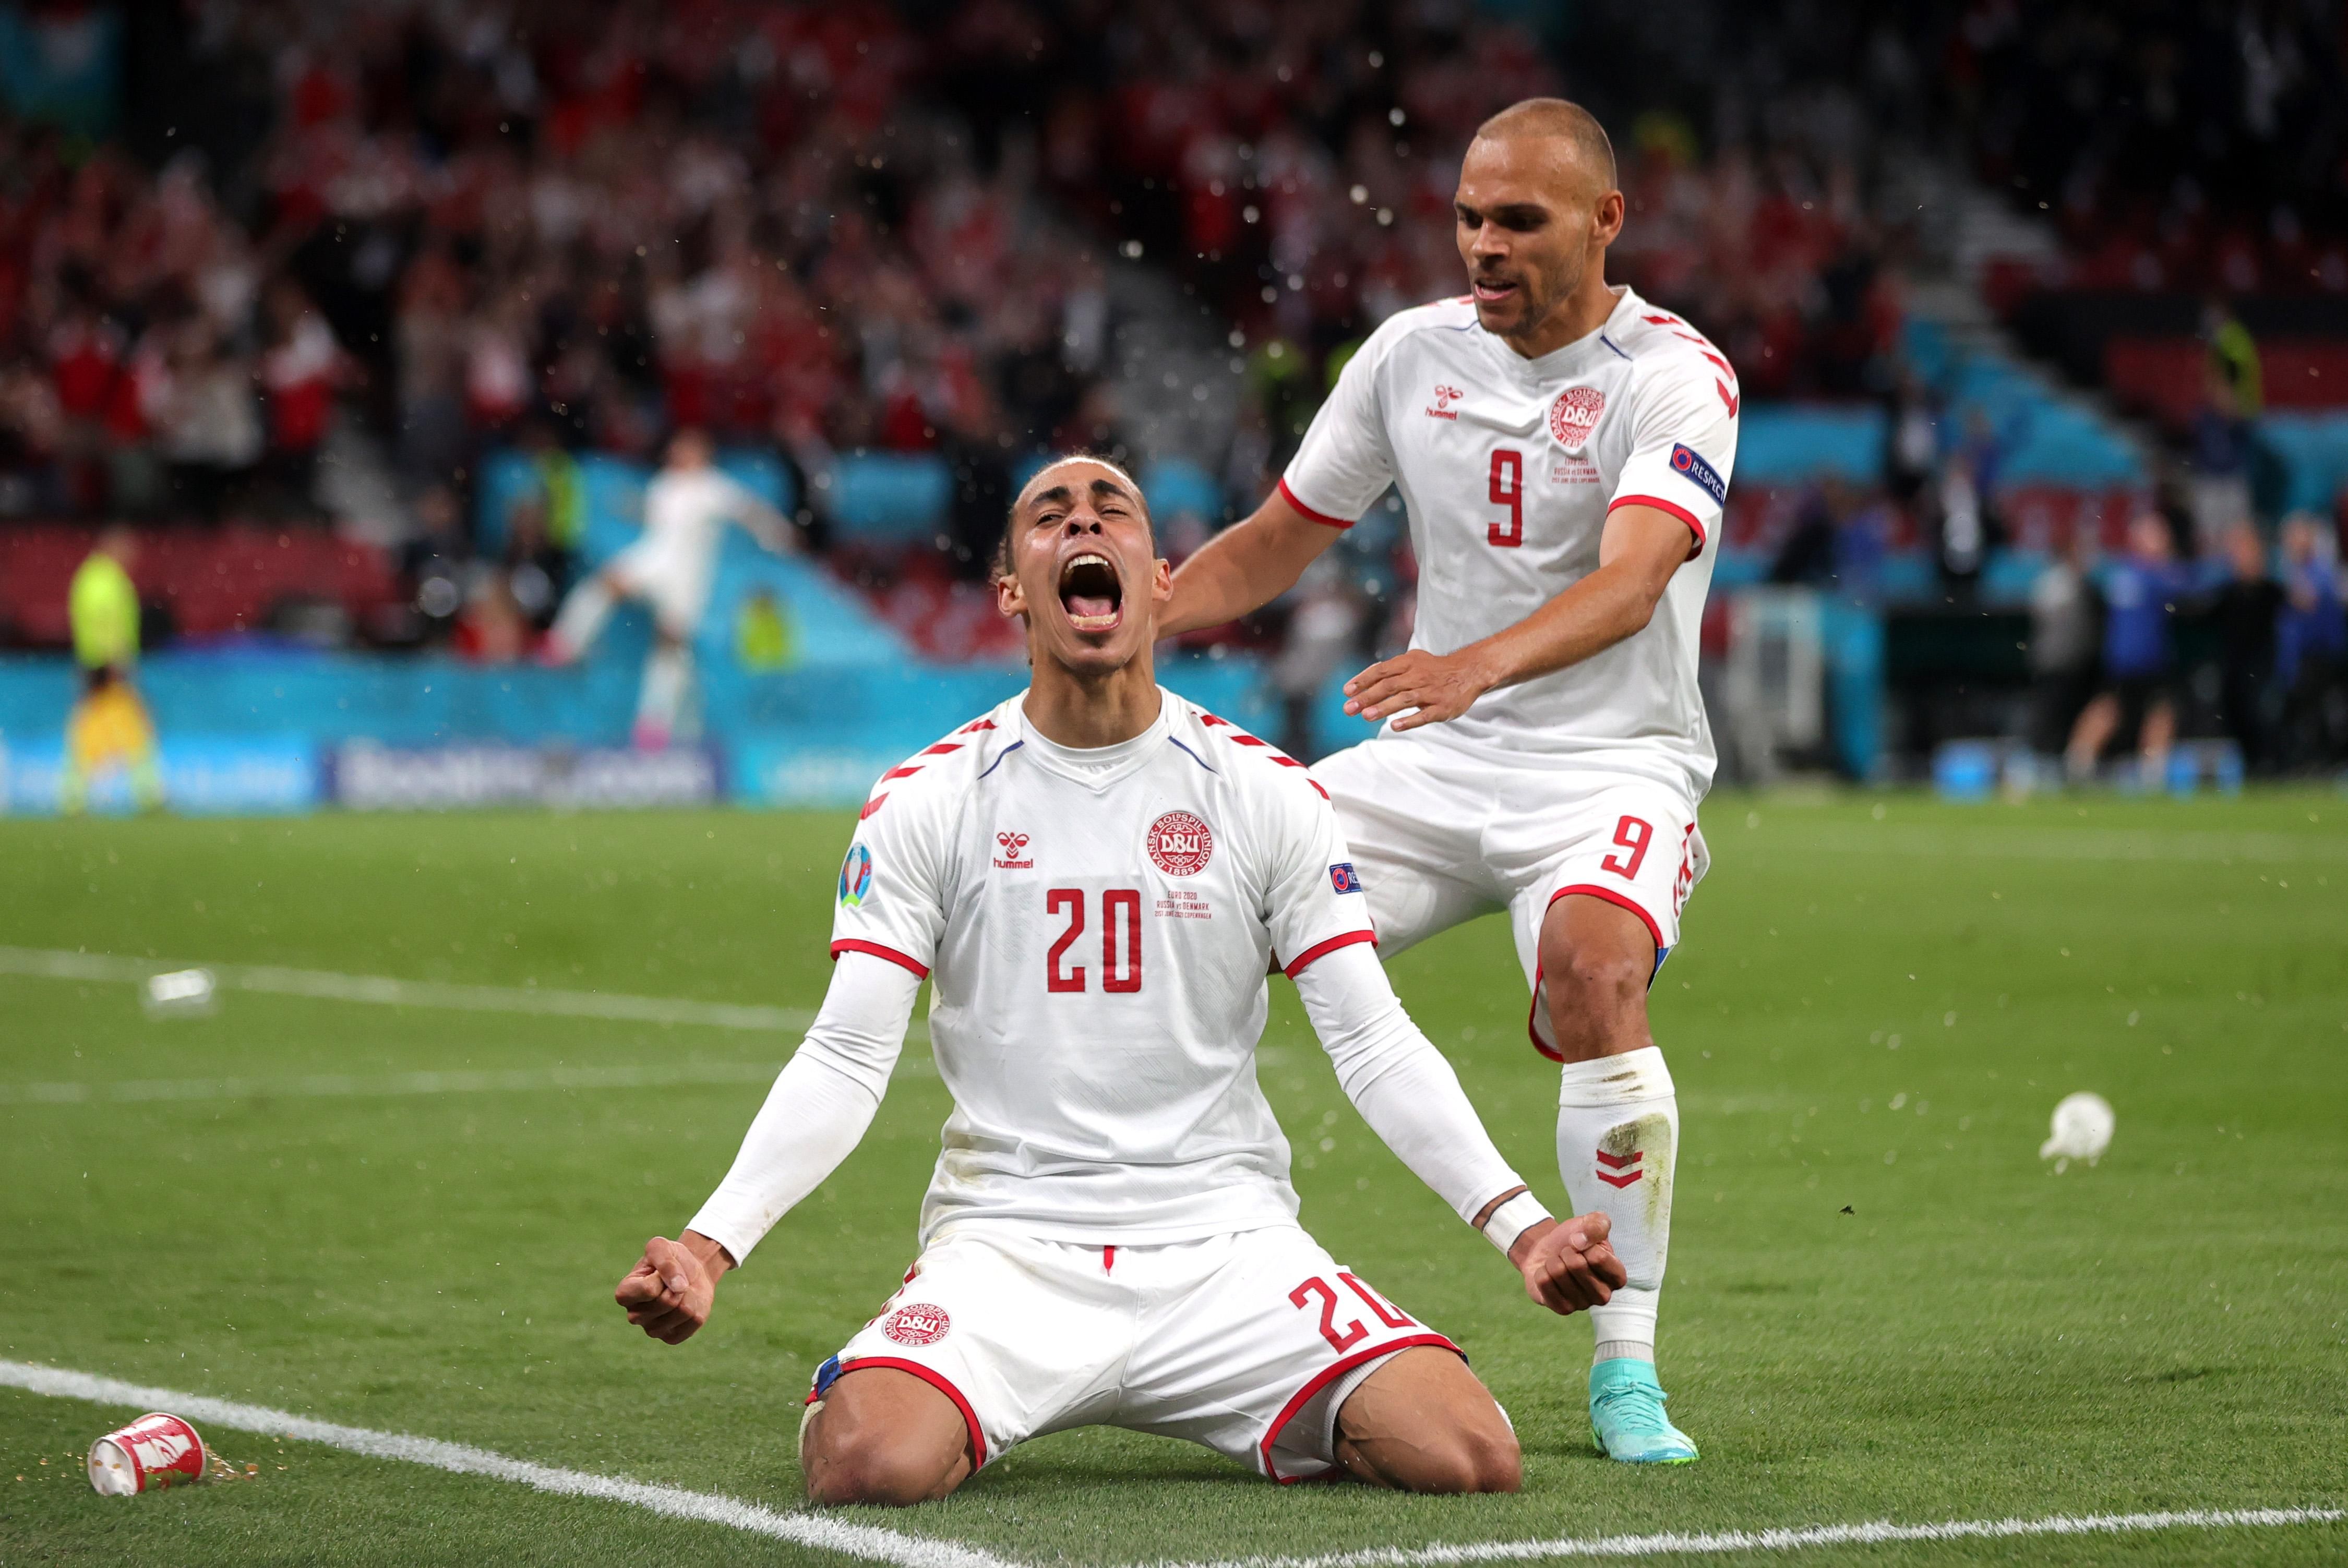 Юссуф Поульсен забил гол в матче Россия - Дания на Евро-2020